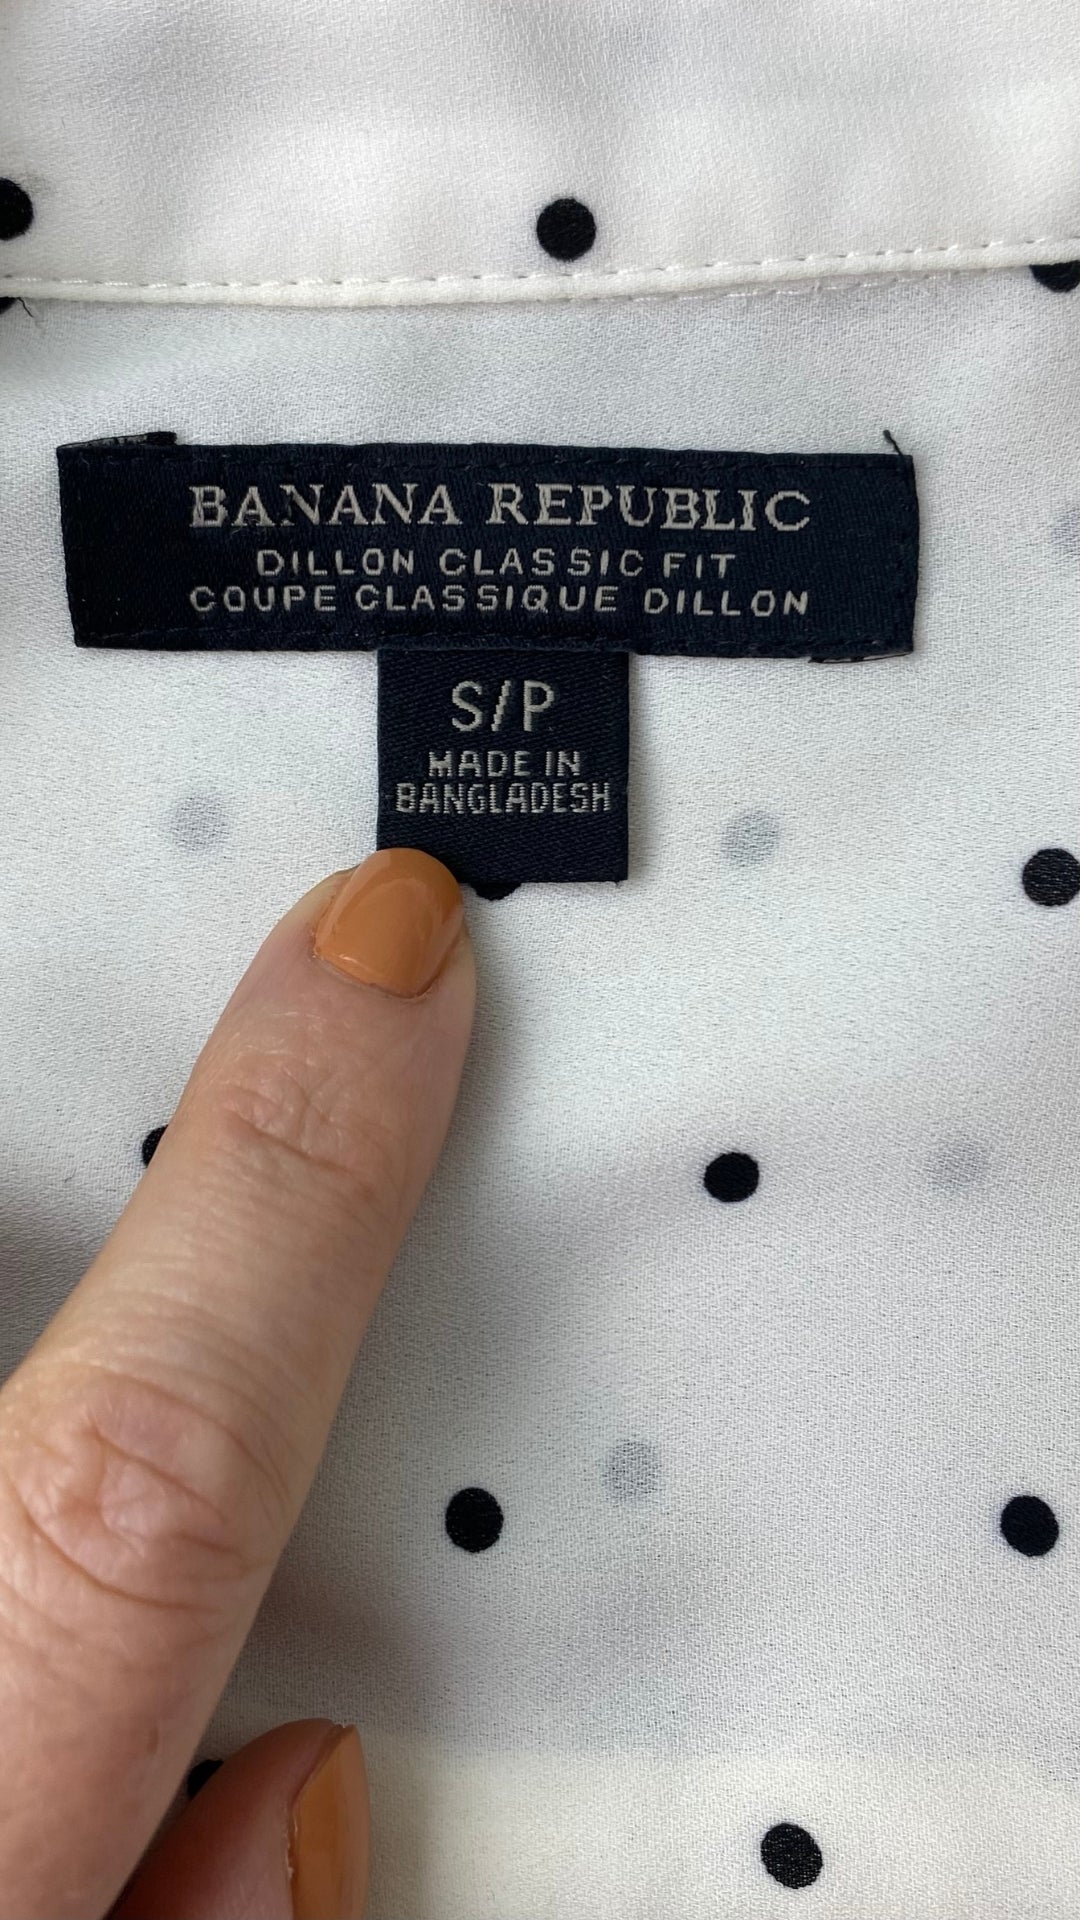 Chemisier crème à pois noirs Banana Republic, taille small. Vue de l'étiquette de marque et taille.